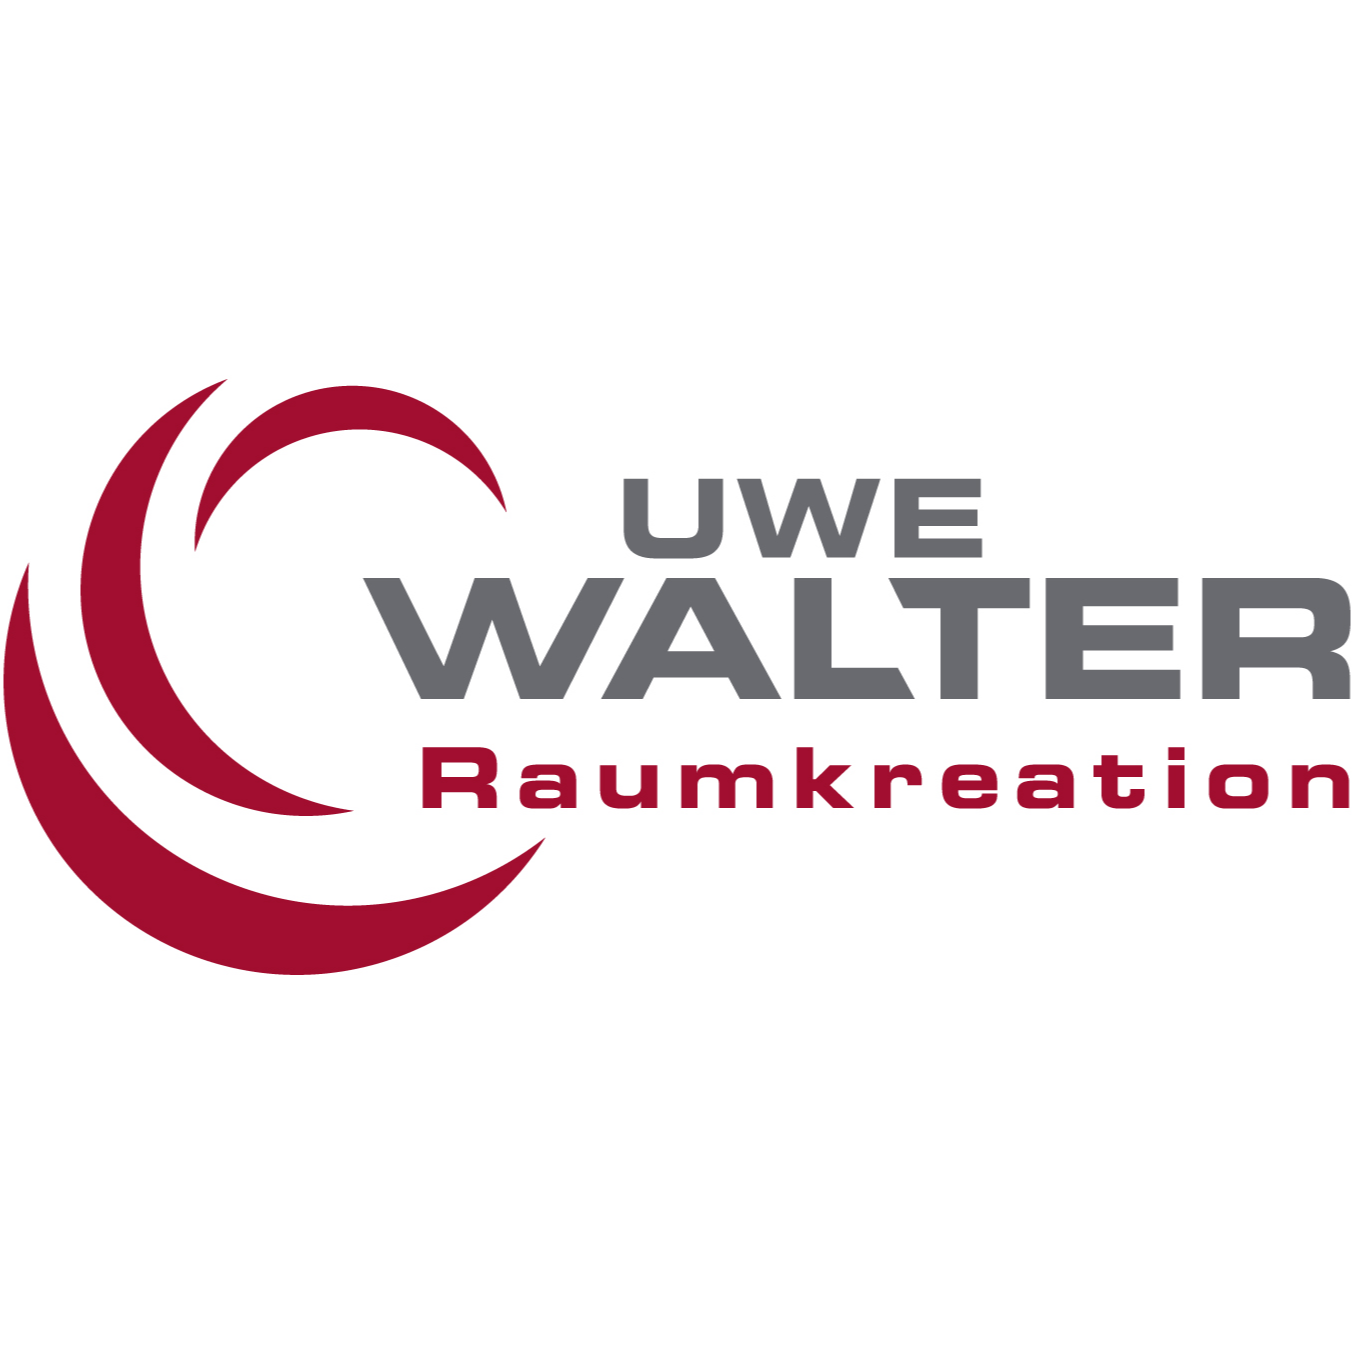 Uwe Walter Raumkreation GmbH in Dortmund - Logo